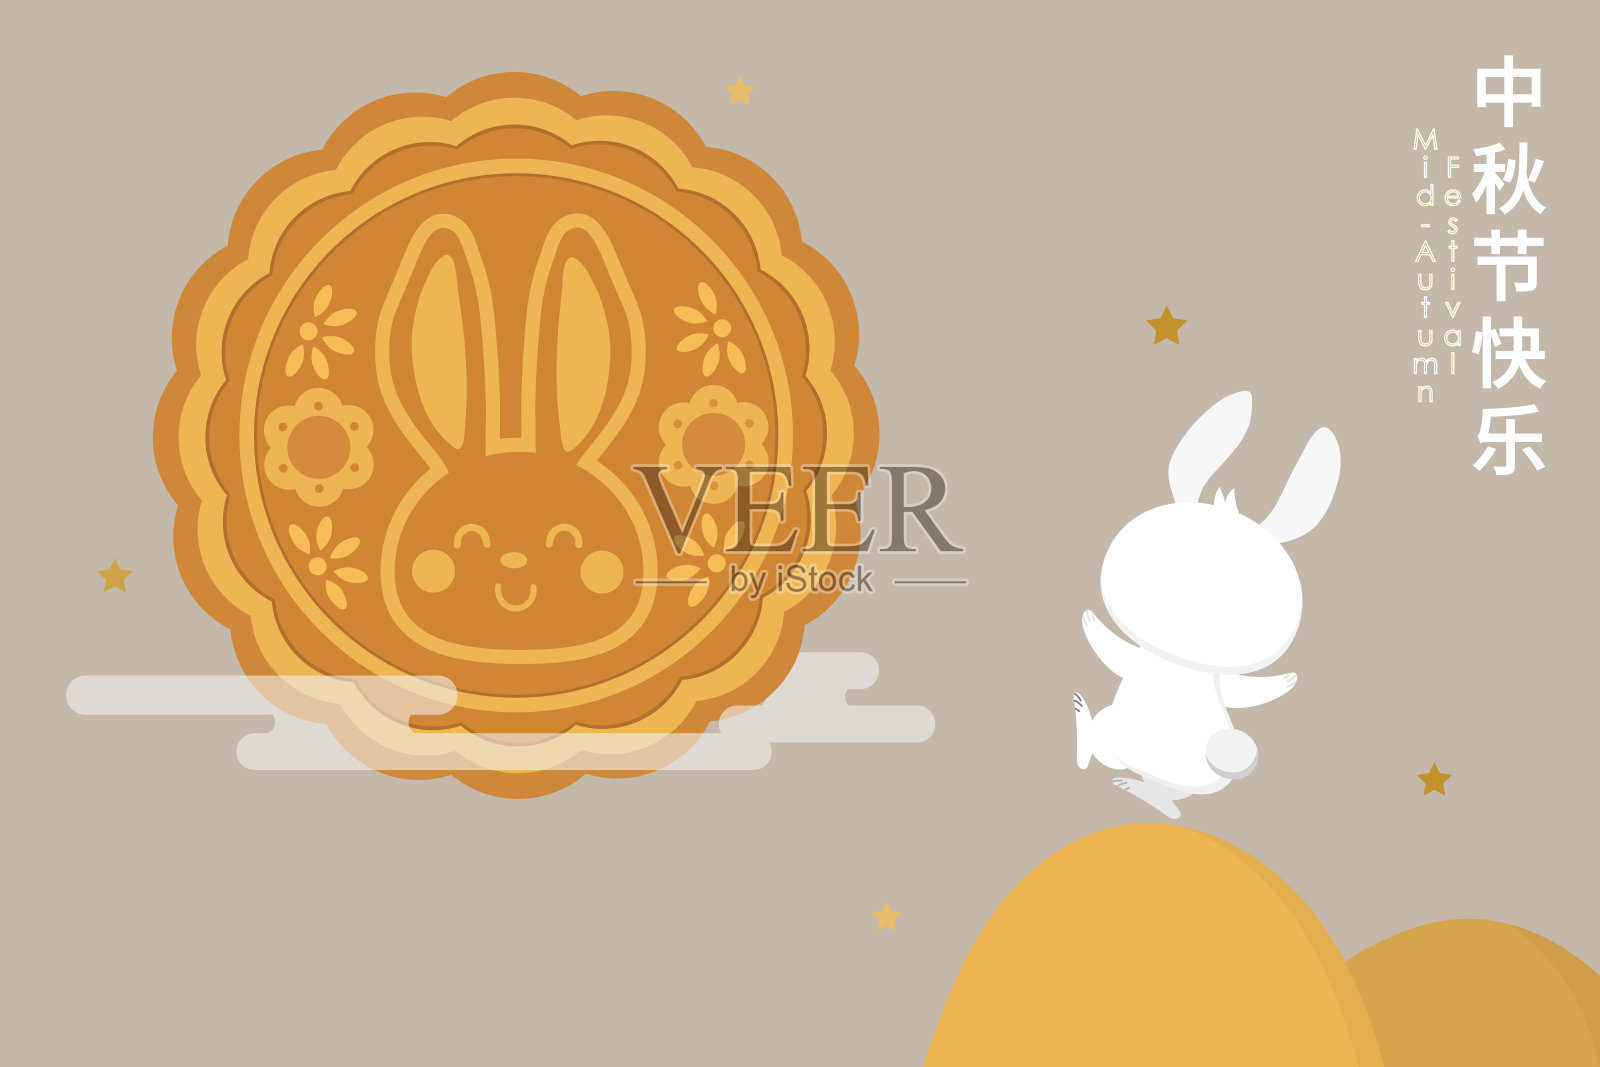 可爱的兔子和月饼的中秋贺卡快乐。动物卡通人物向量。翻译:中秋节。设计模板素材